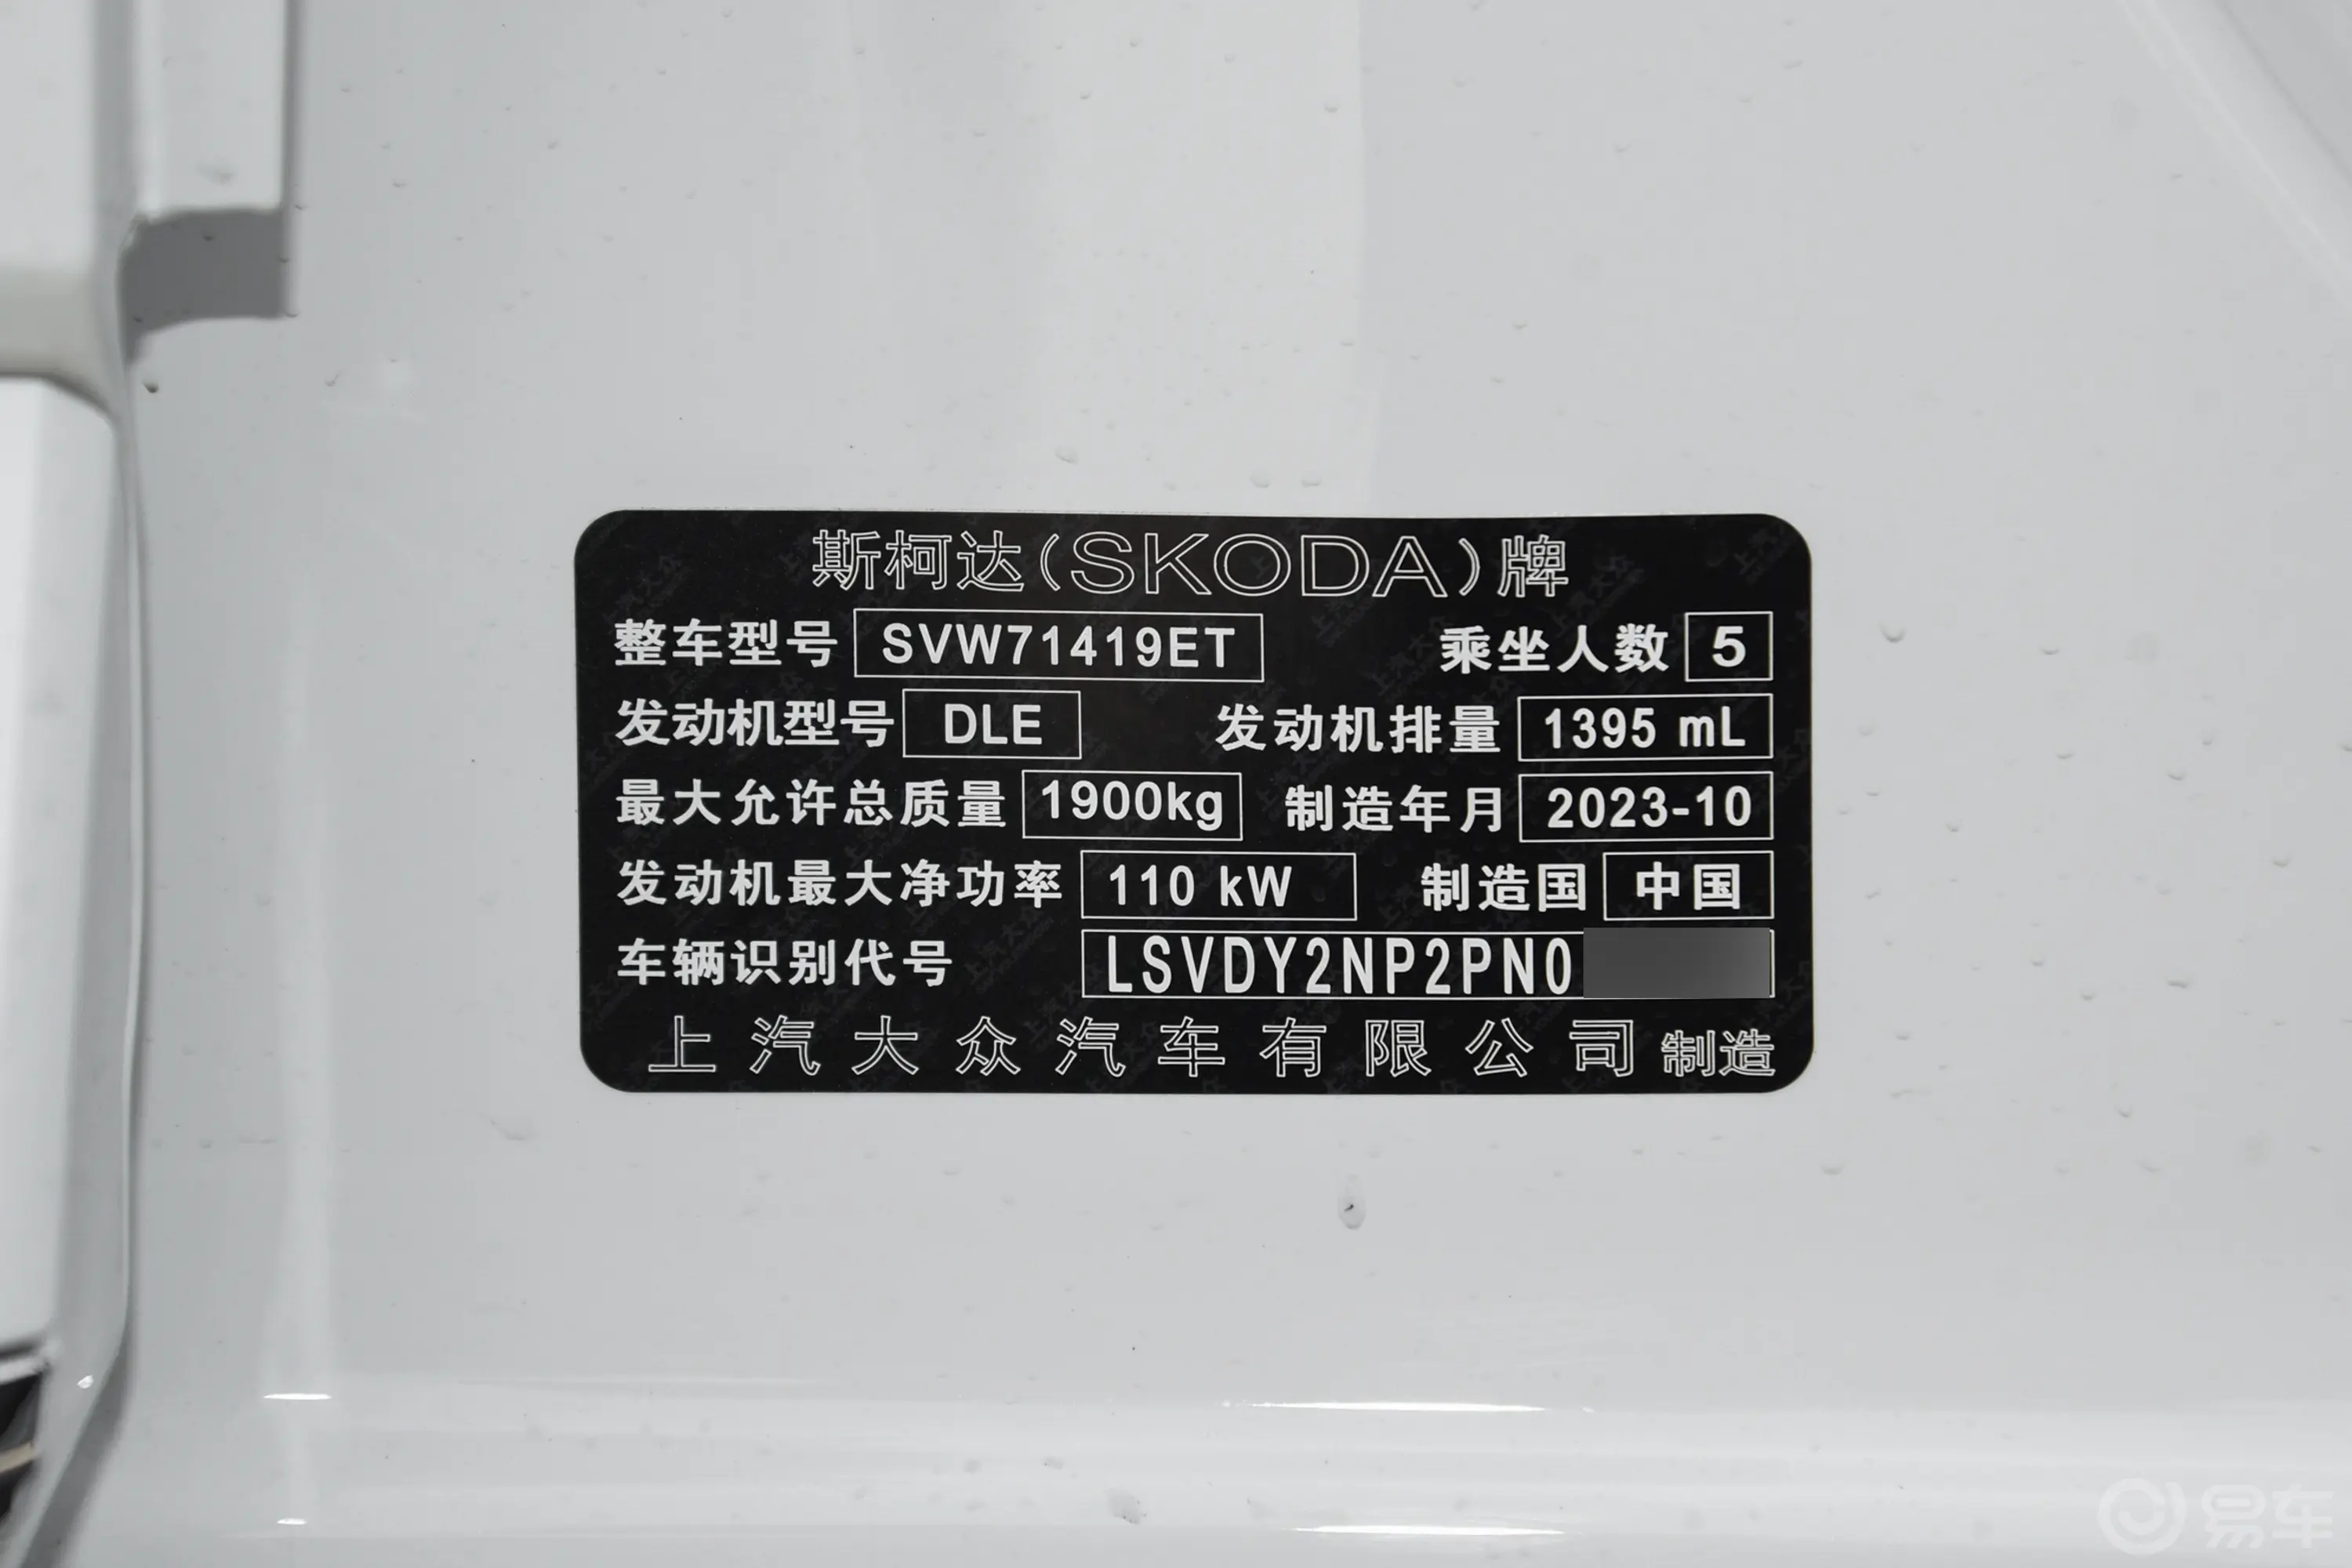 速派TSI280 尊享版车辆信息铭牌